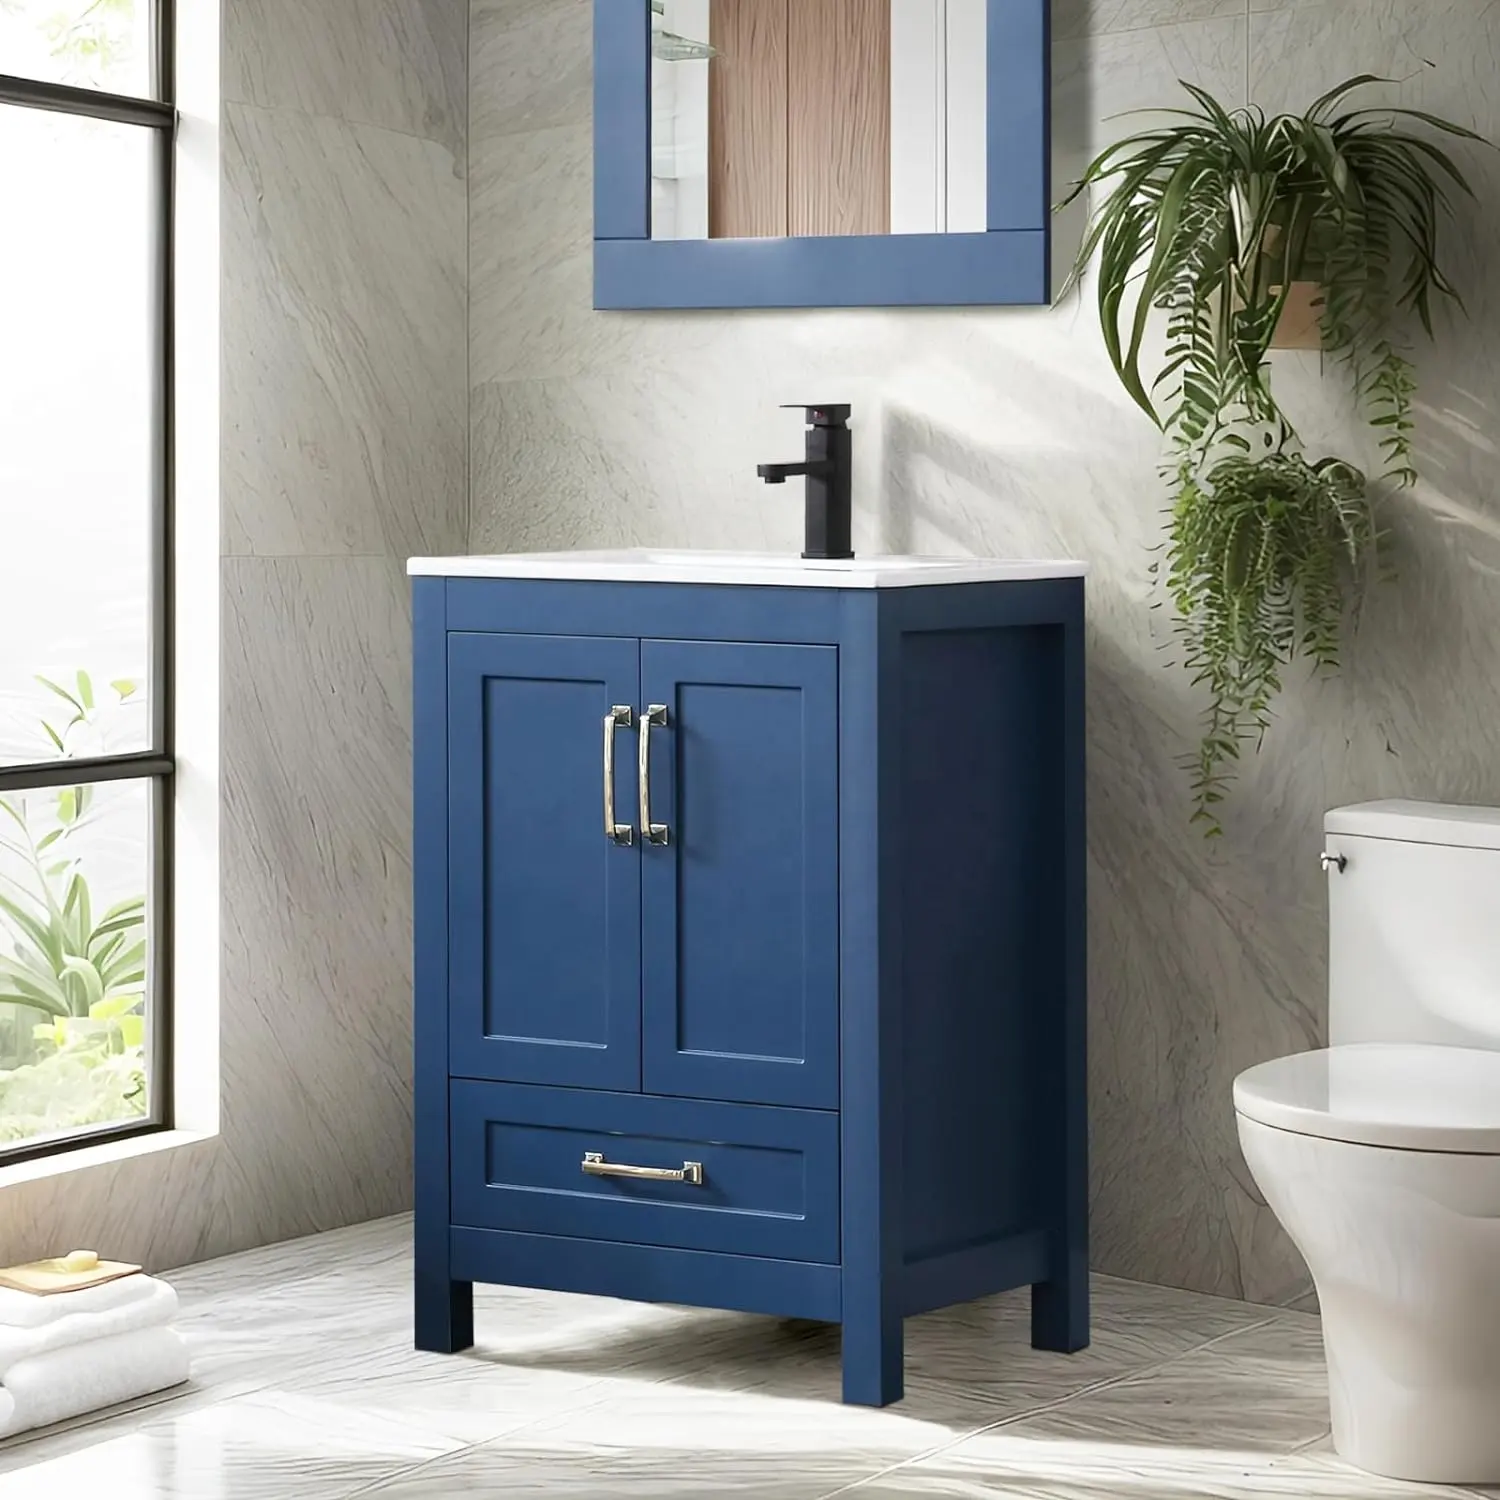 24 "mavi boyalı bağlantısız banyo Vanity Modern banyo Vanity dolapları 24 inç banyo Vanity lavabo ile